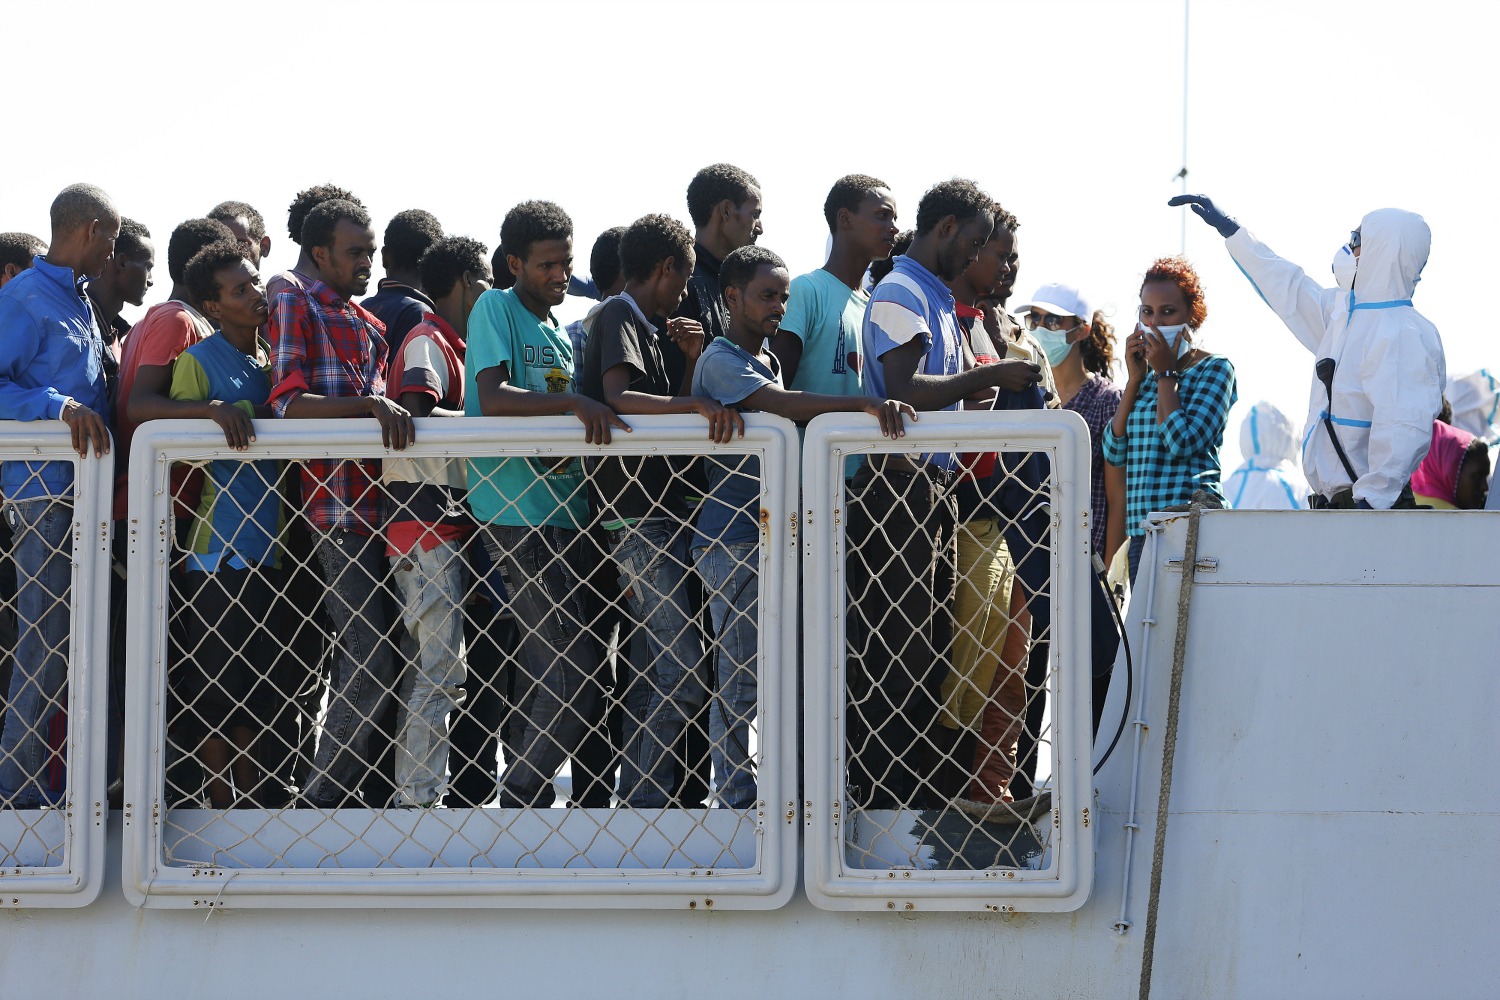 Italia recupera el barco hundido en 2015 con 700 inmigrantes a bordo